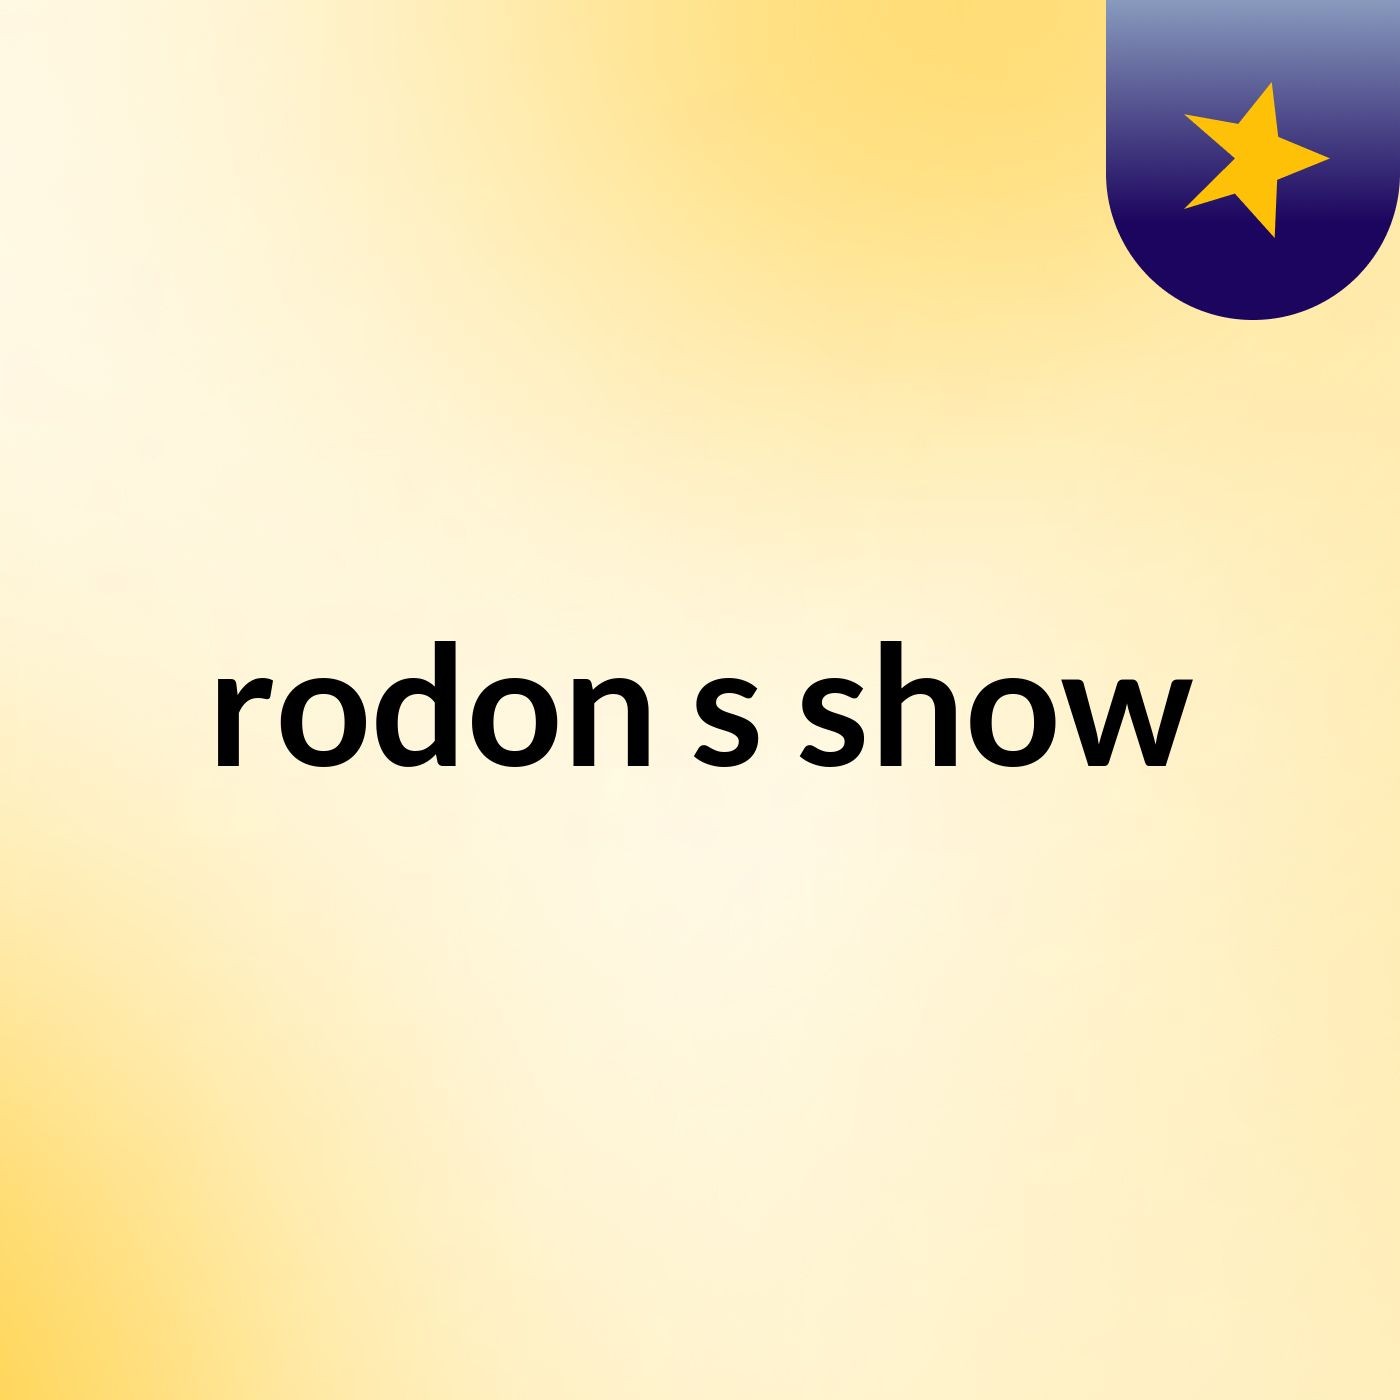 rodon's show